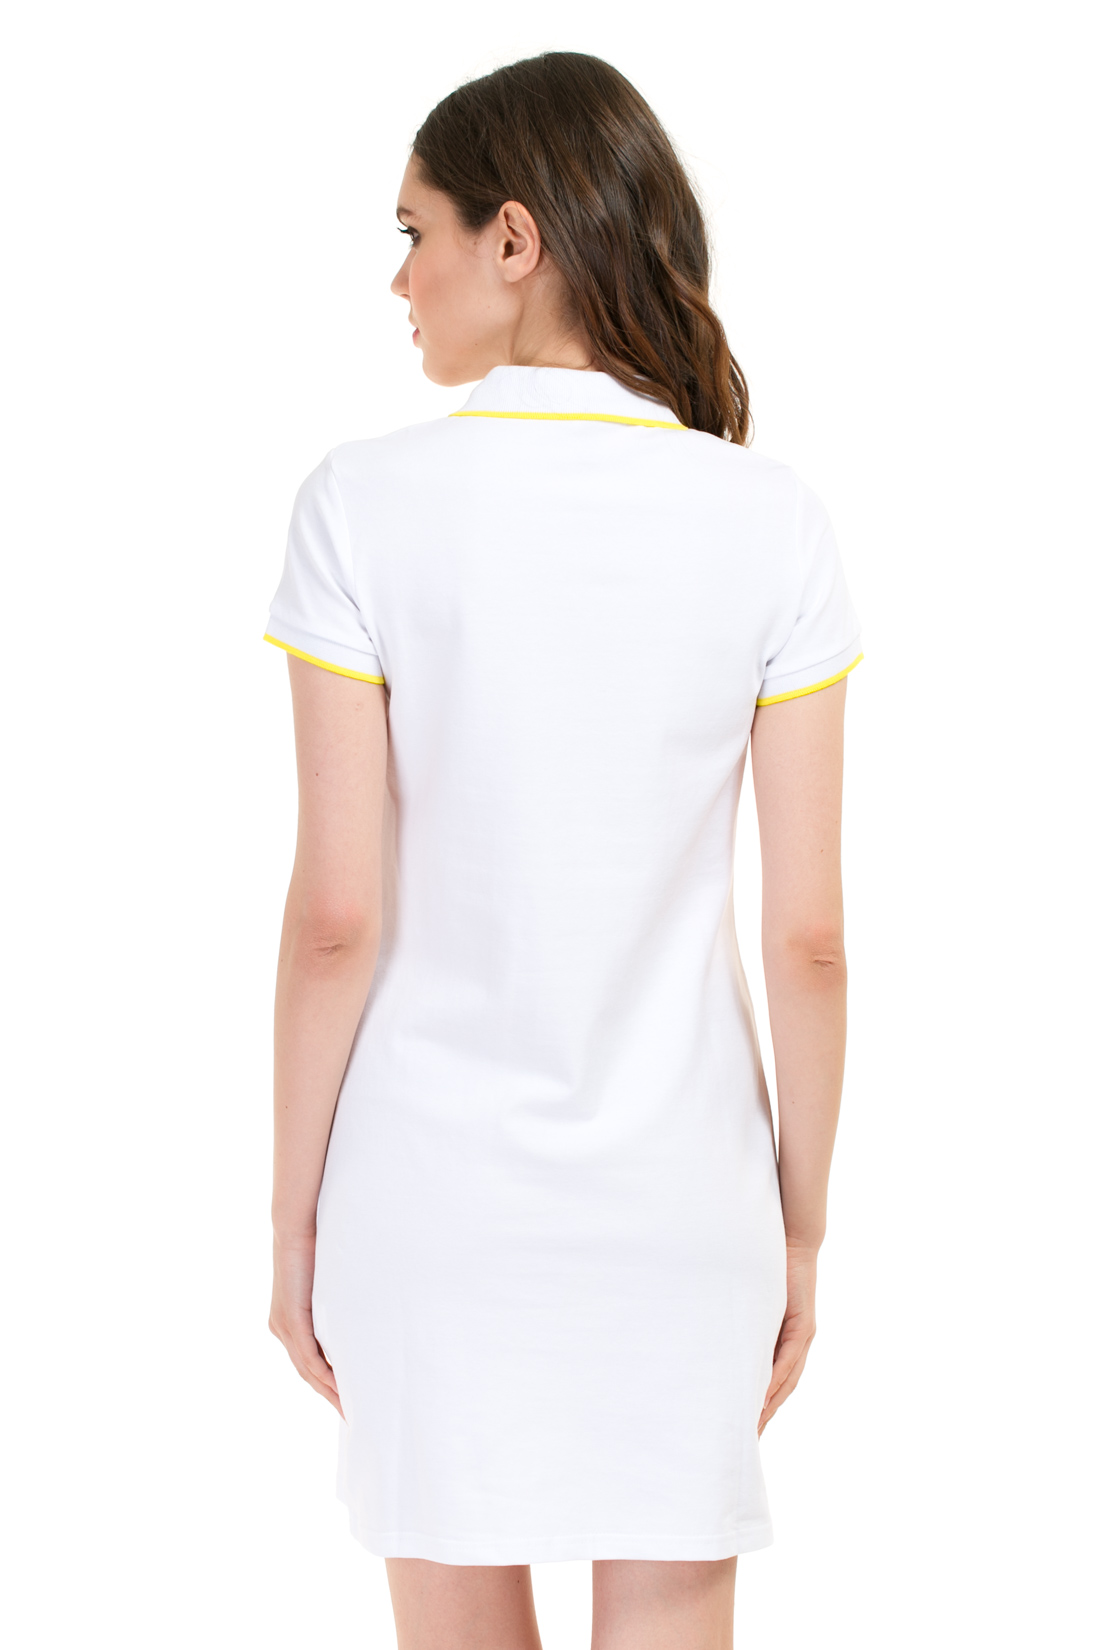 Платье-поло (арт. baon B457201), размер L, цвет белый Платье-поло (арт. baon B457201) - фото 2